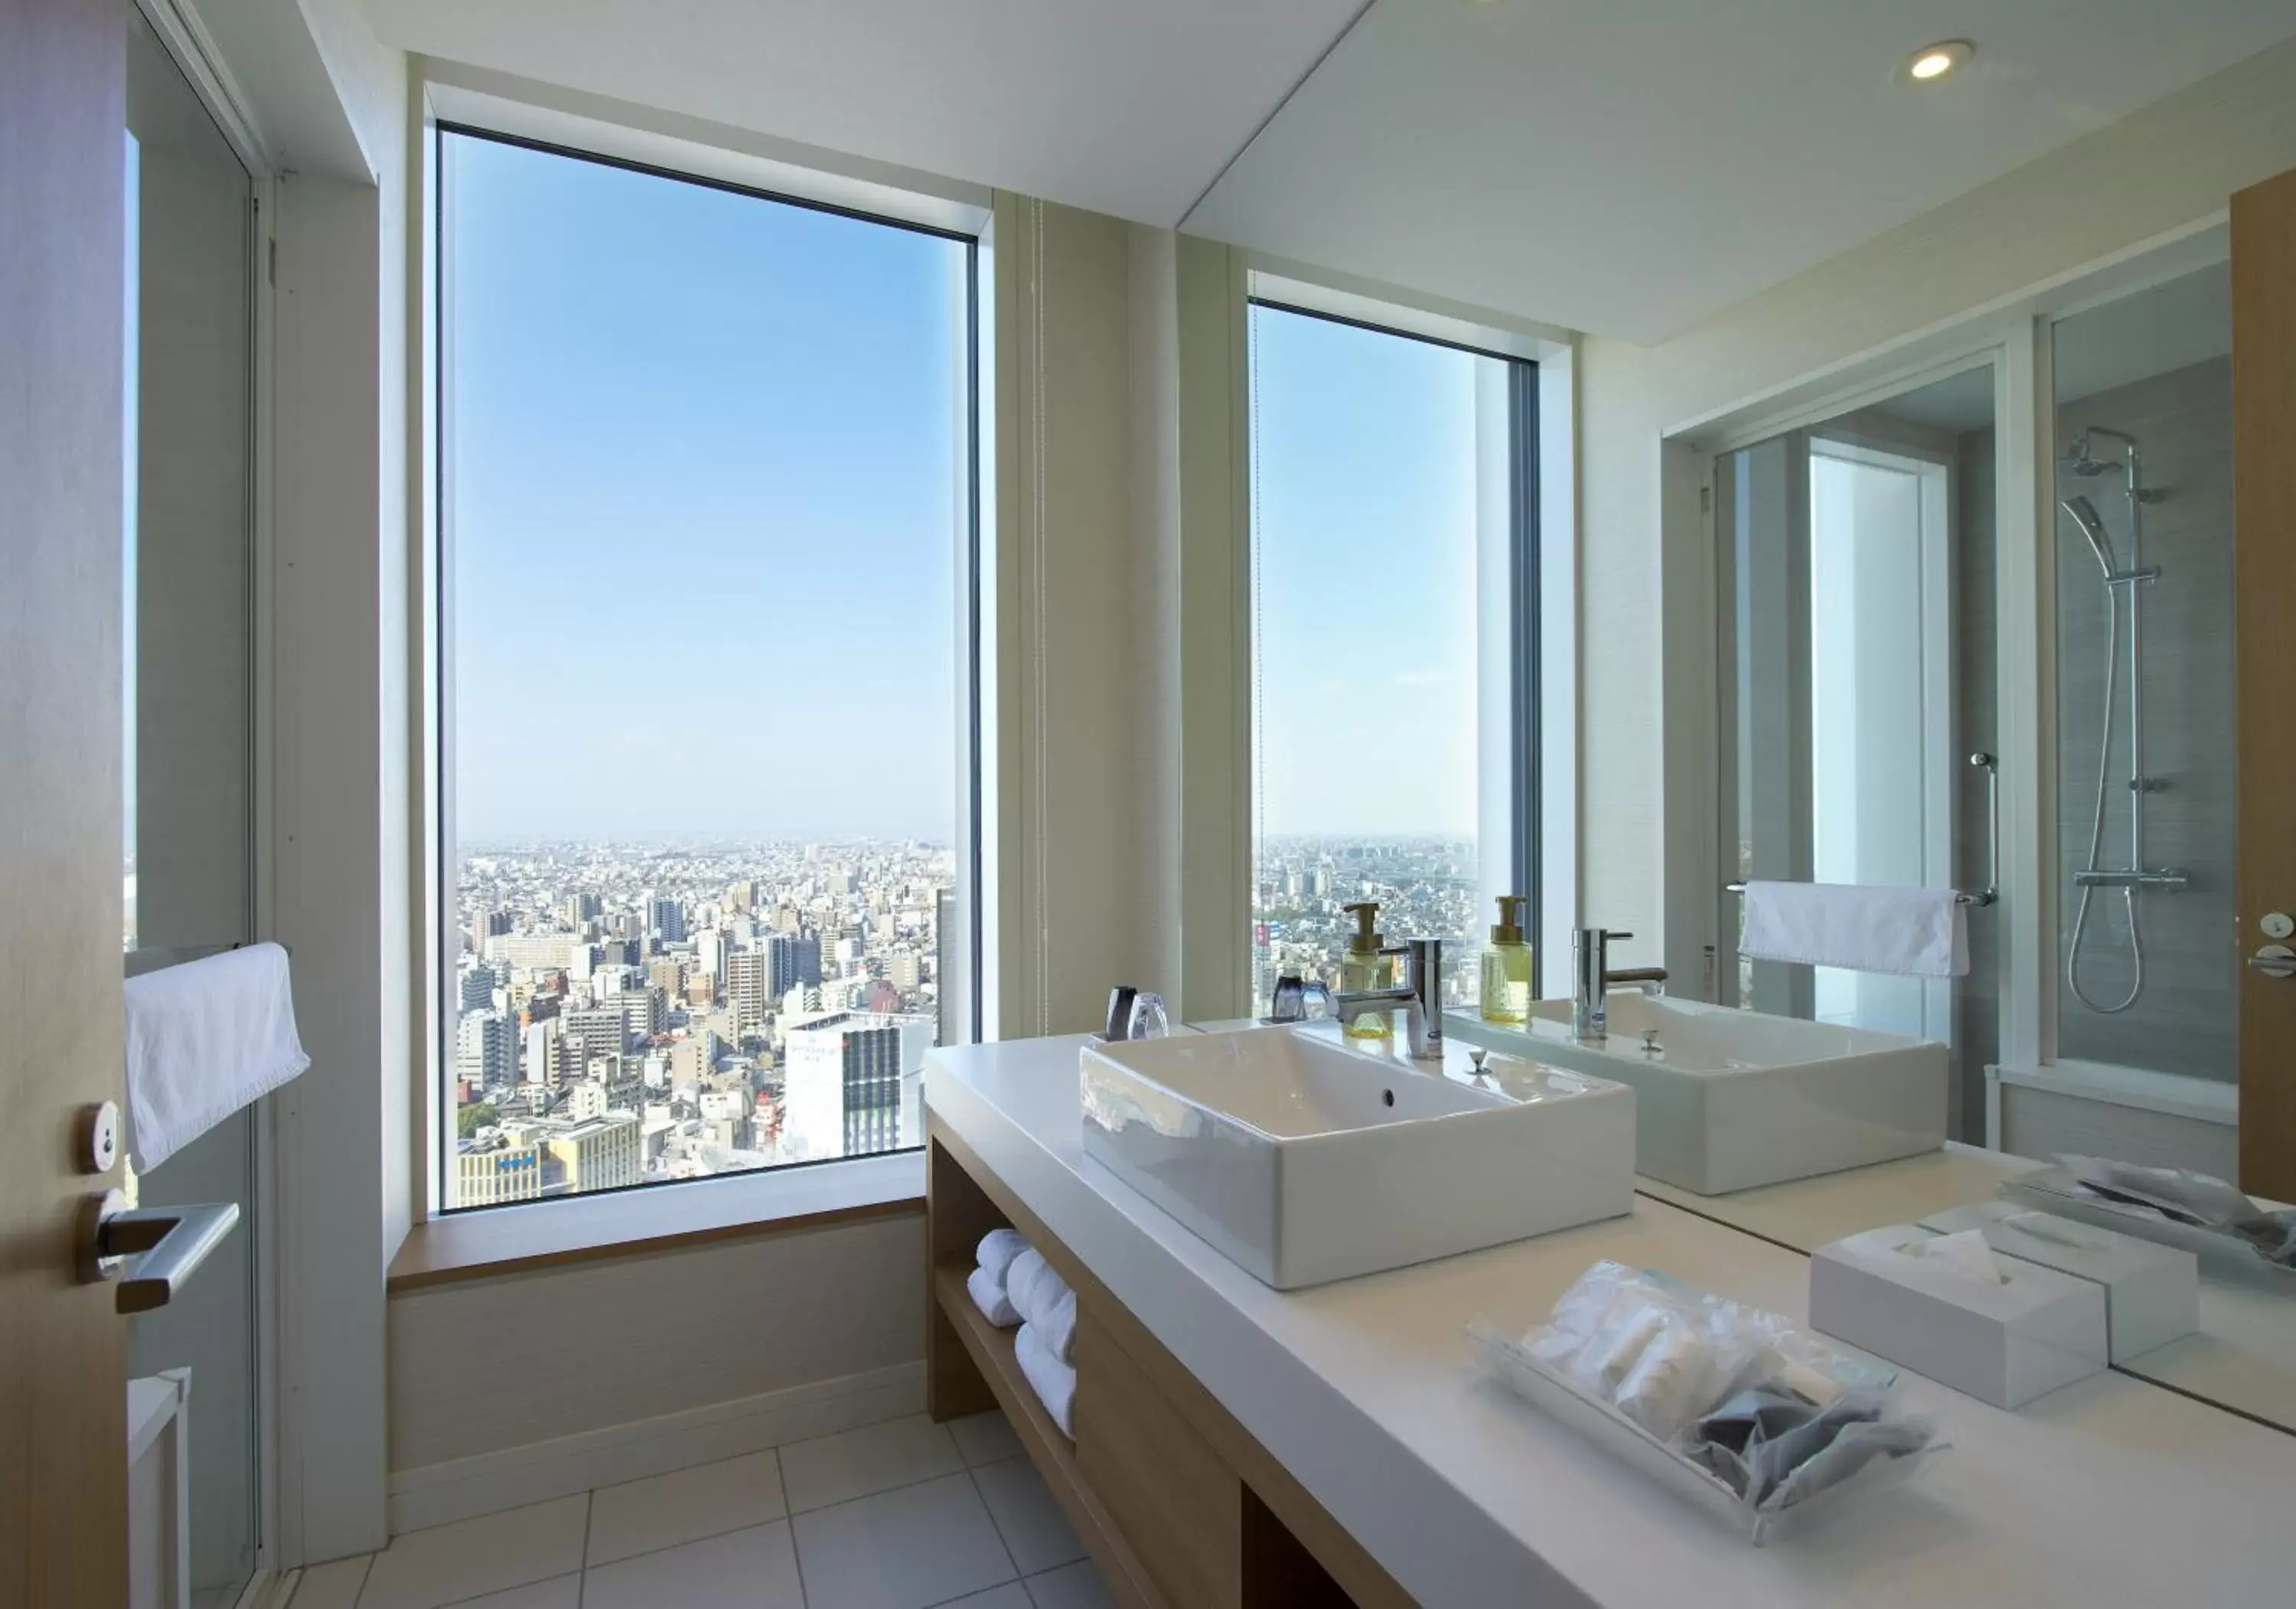 Bathroom in Nagoya JR Gate Tower Hotel